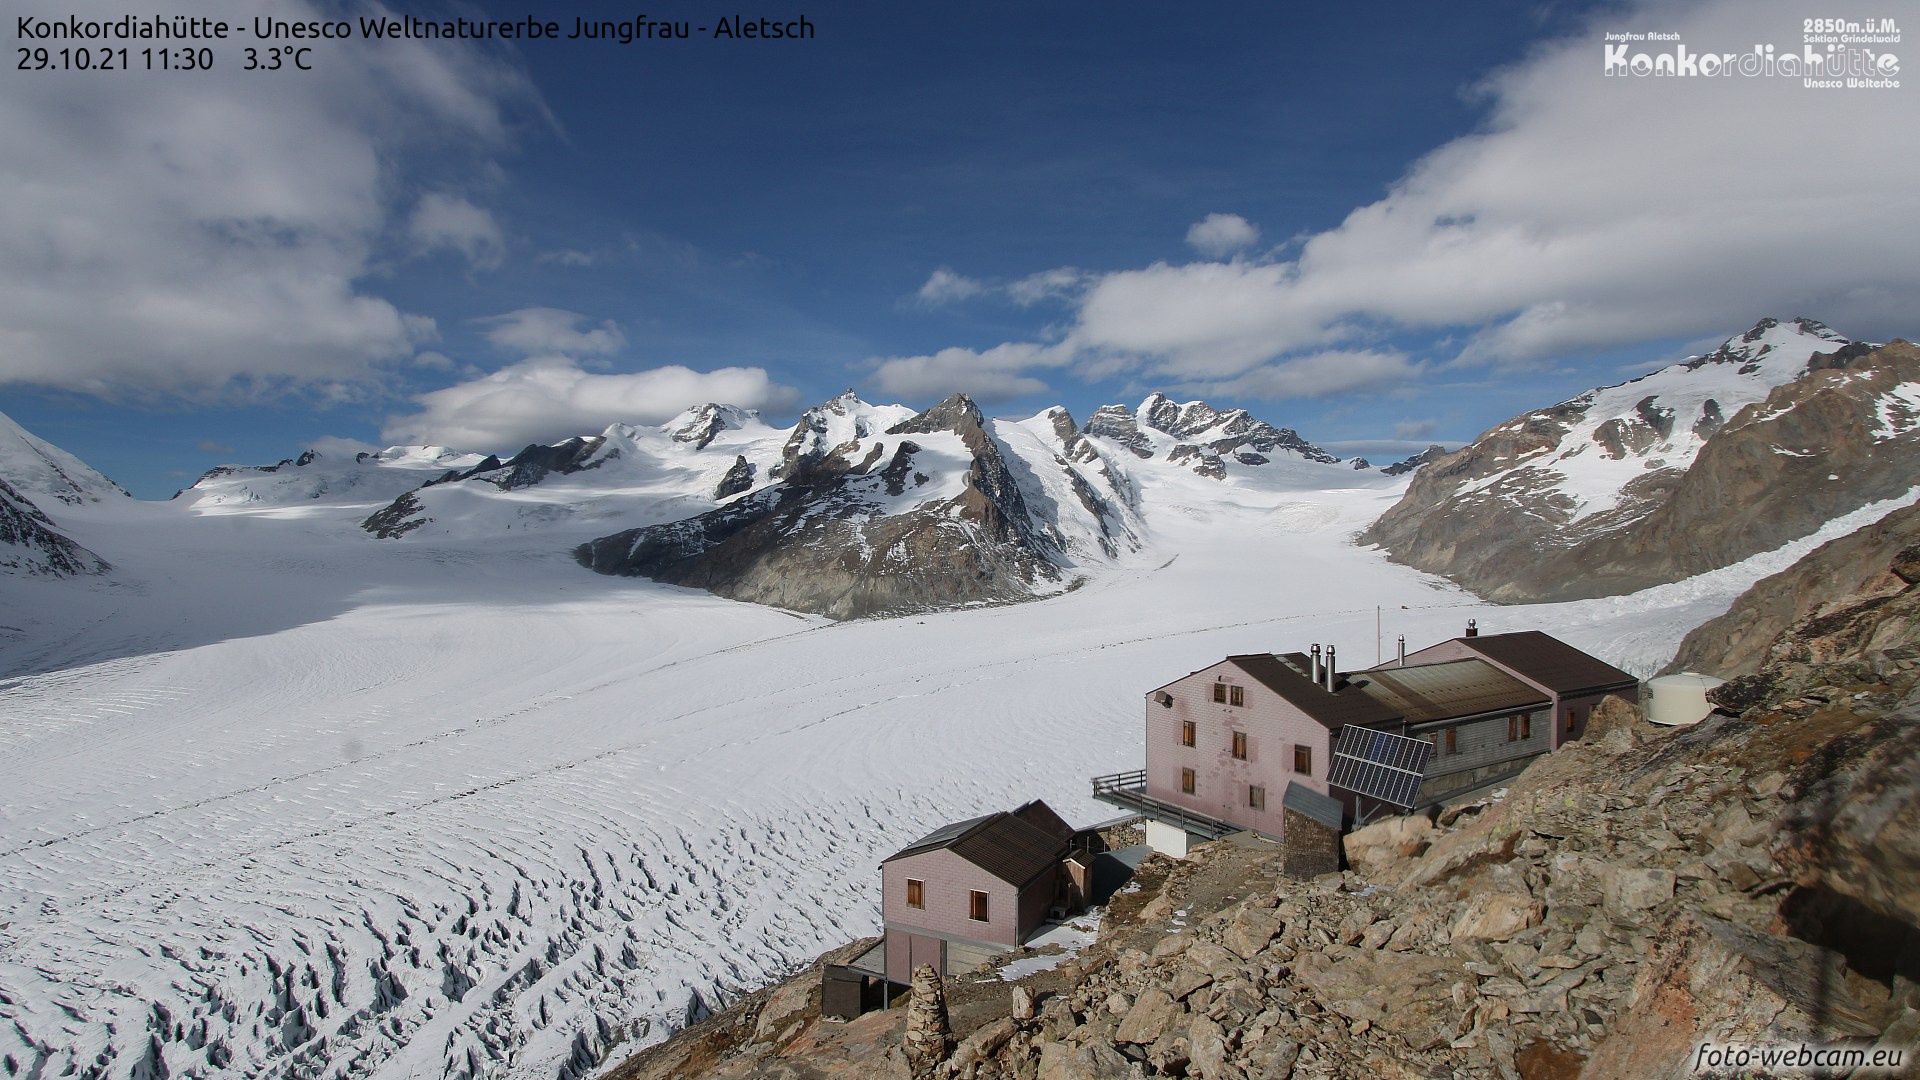 Nog erg weinig sneeuw in de Alpen, ook hier bij de Konkordiahütte (2850m) in Zwitserland (foto-webcam.eu)